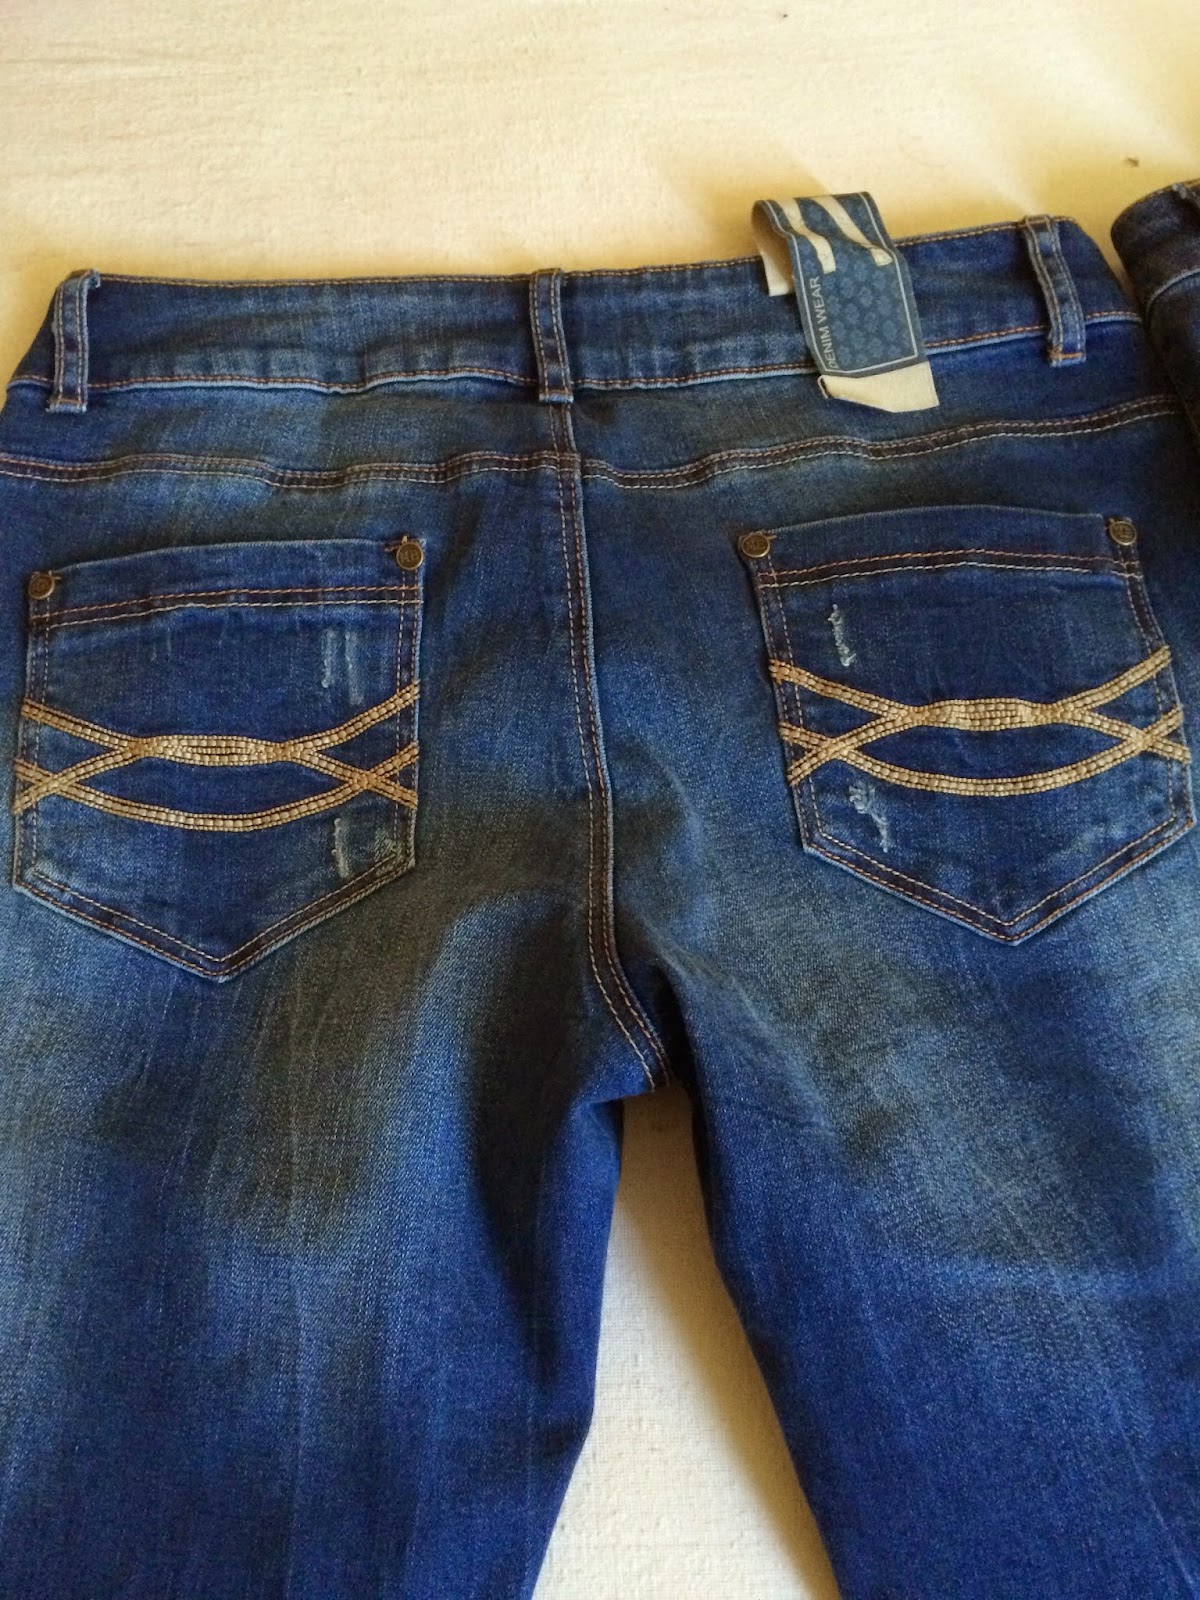 *Werbung* Shoptest Jeans Fritz 1